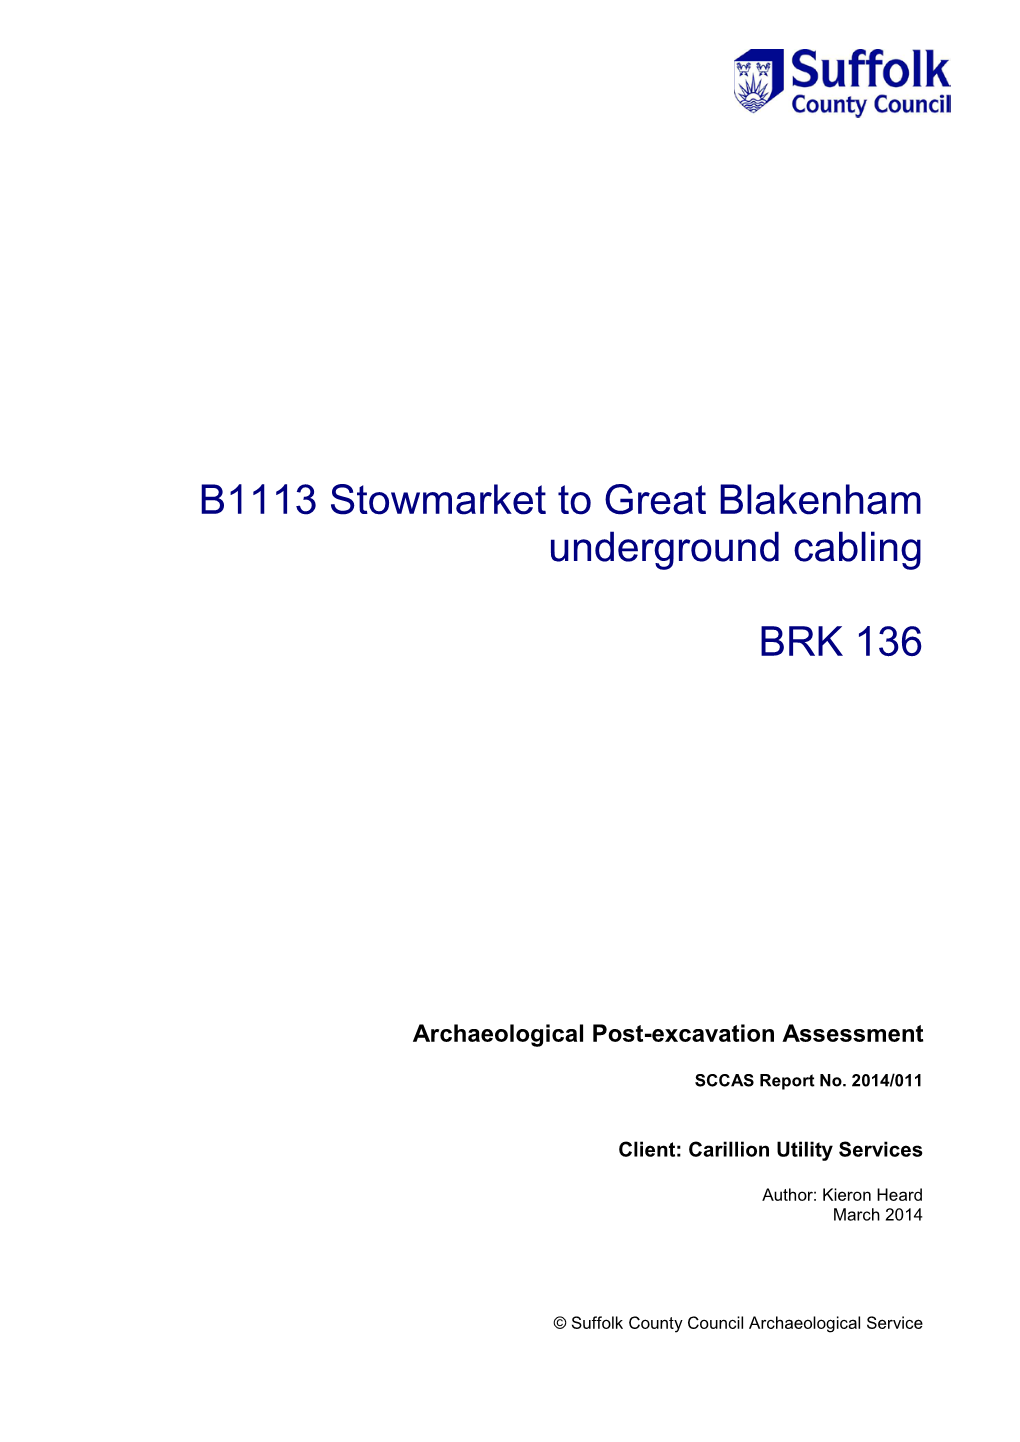 B1113 Stowmarket to Great Blakenham Underground Cabling